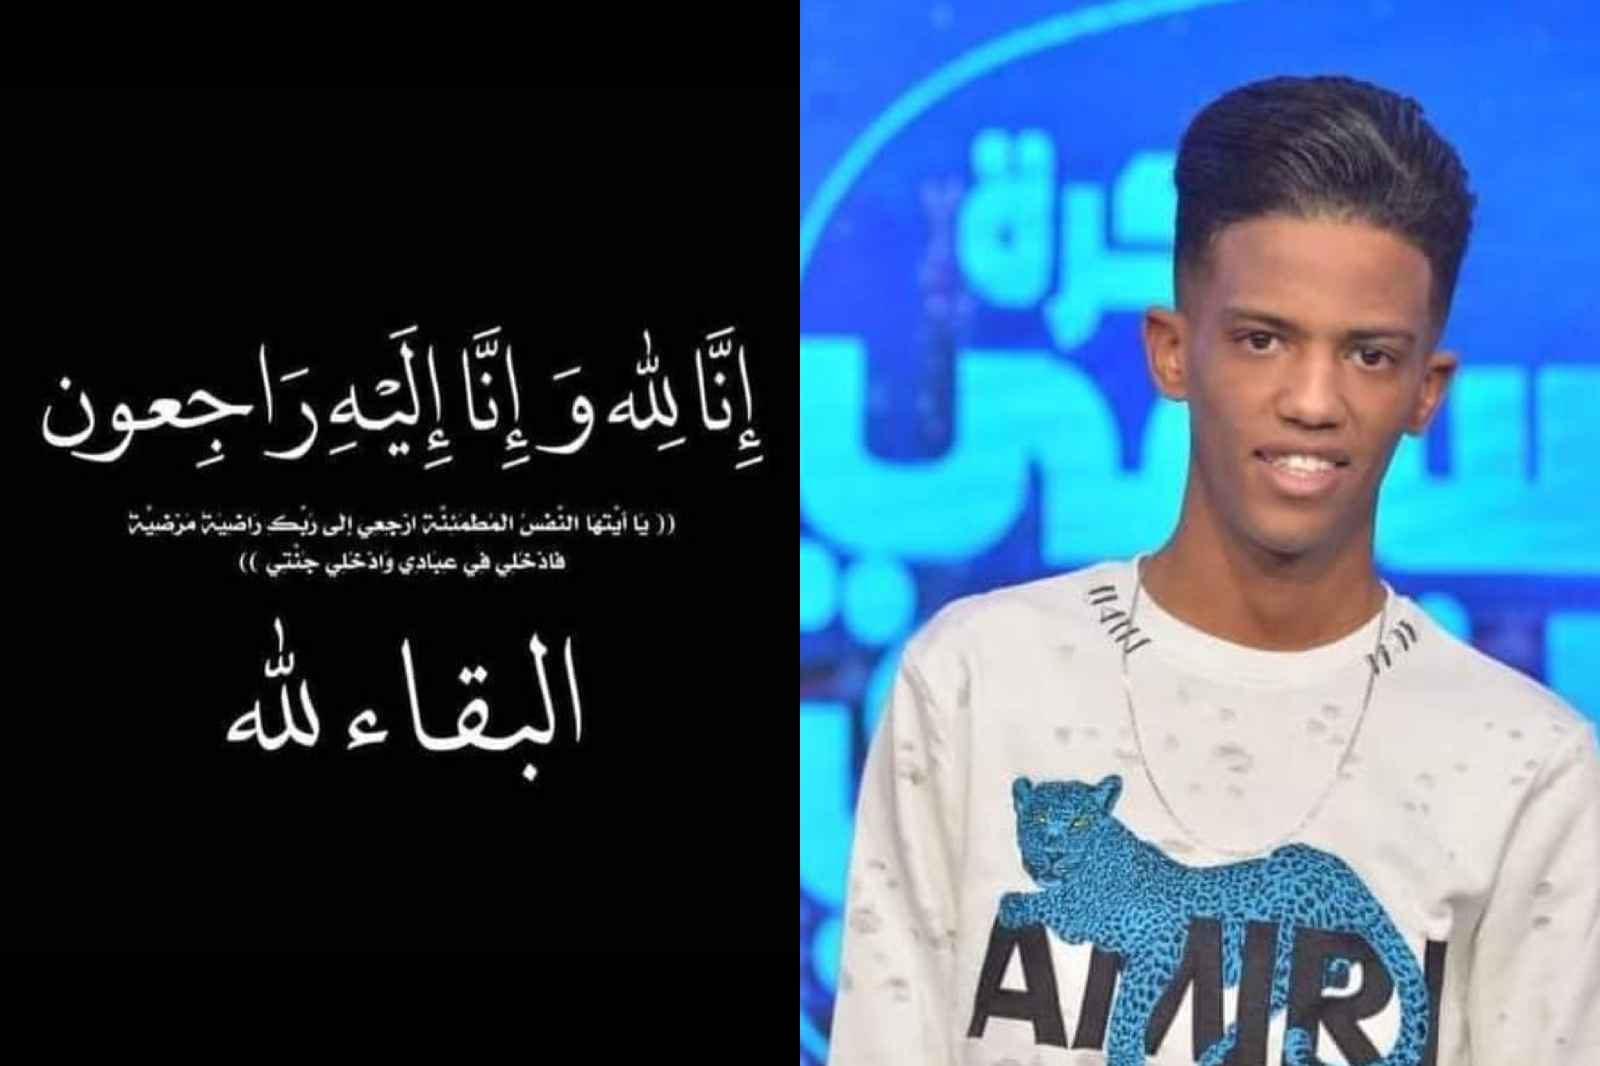 وفاة الفنان الليبي محمد كيمو في تونس: تفاصيل حادثة مأساوية تثير التساؤلات